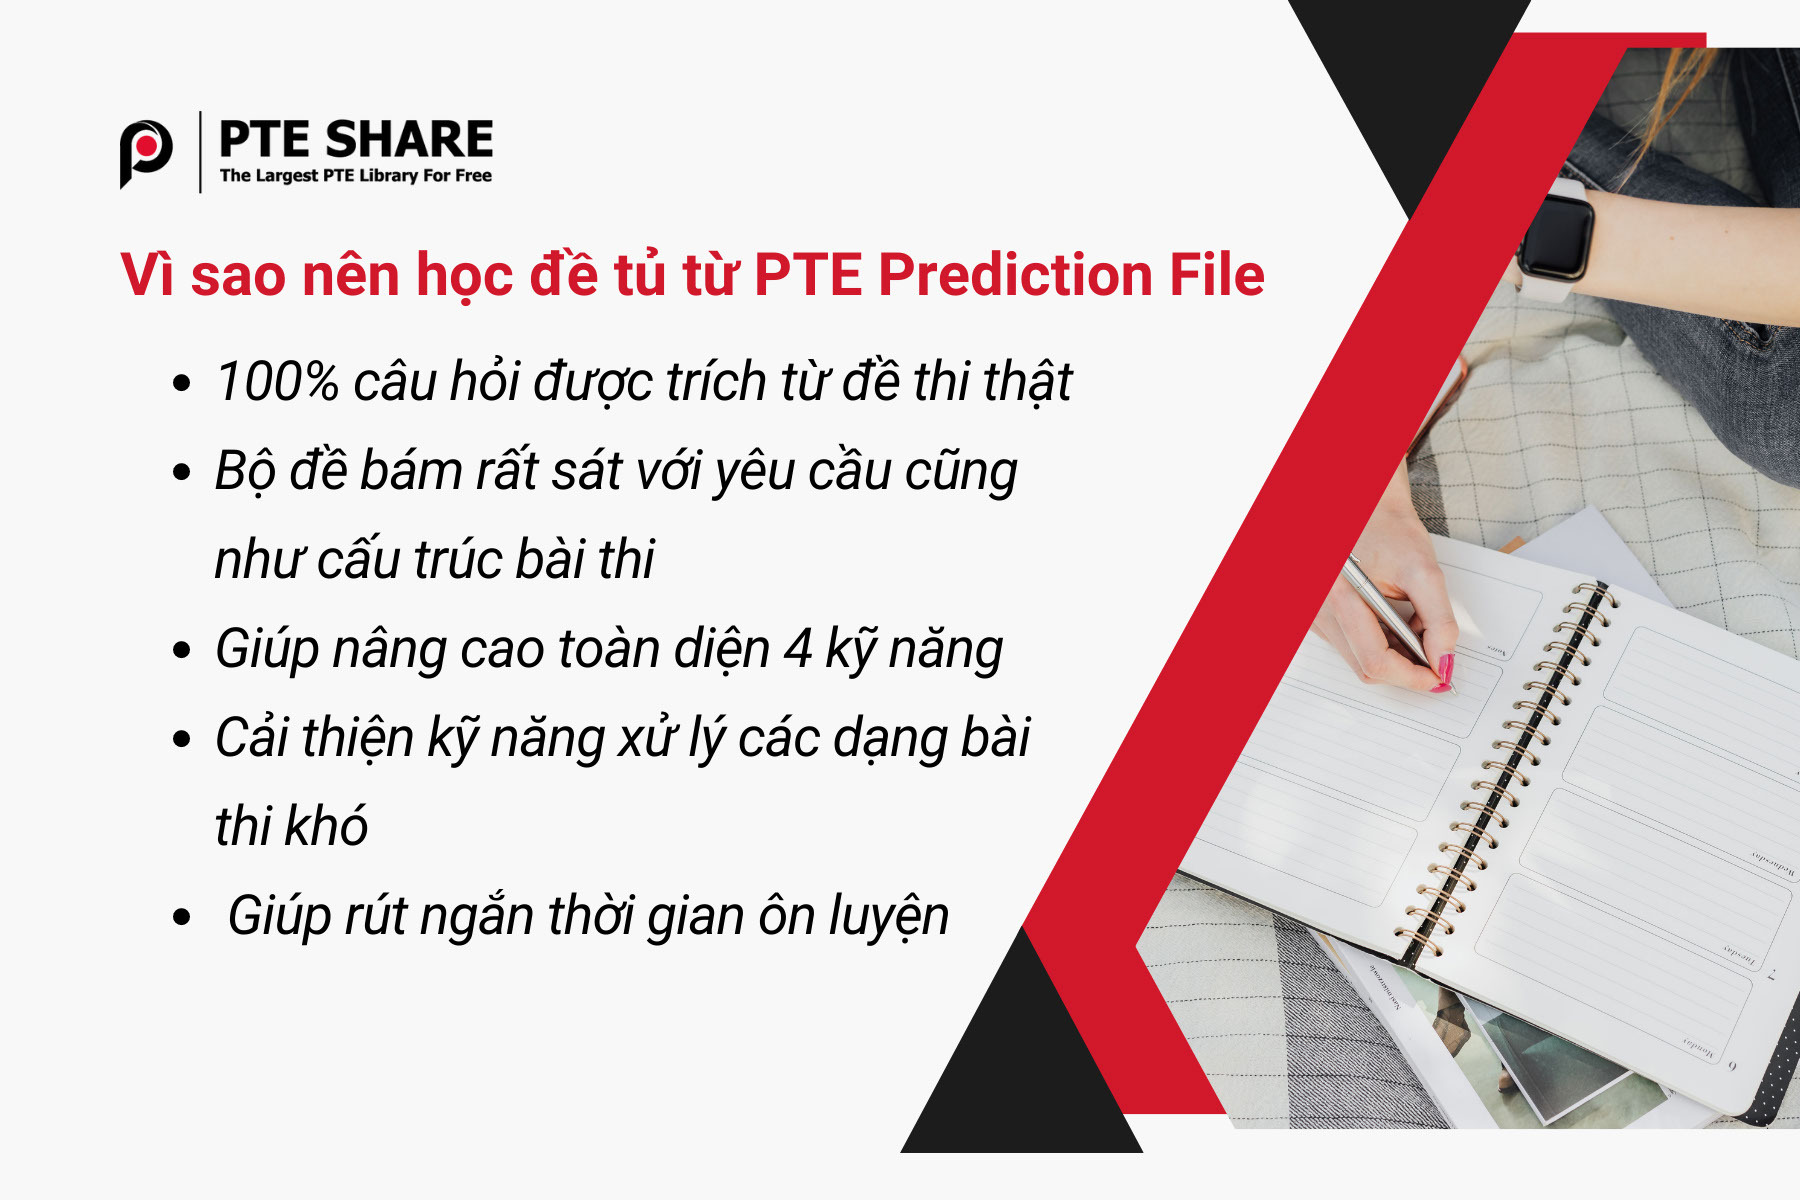 Đề tủ PTE Prediction File